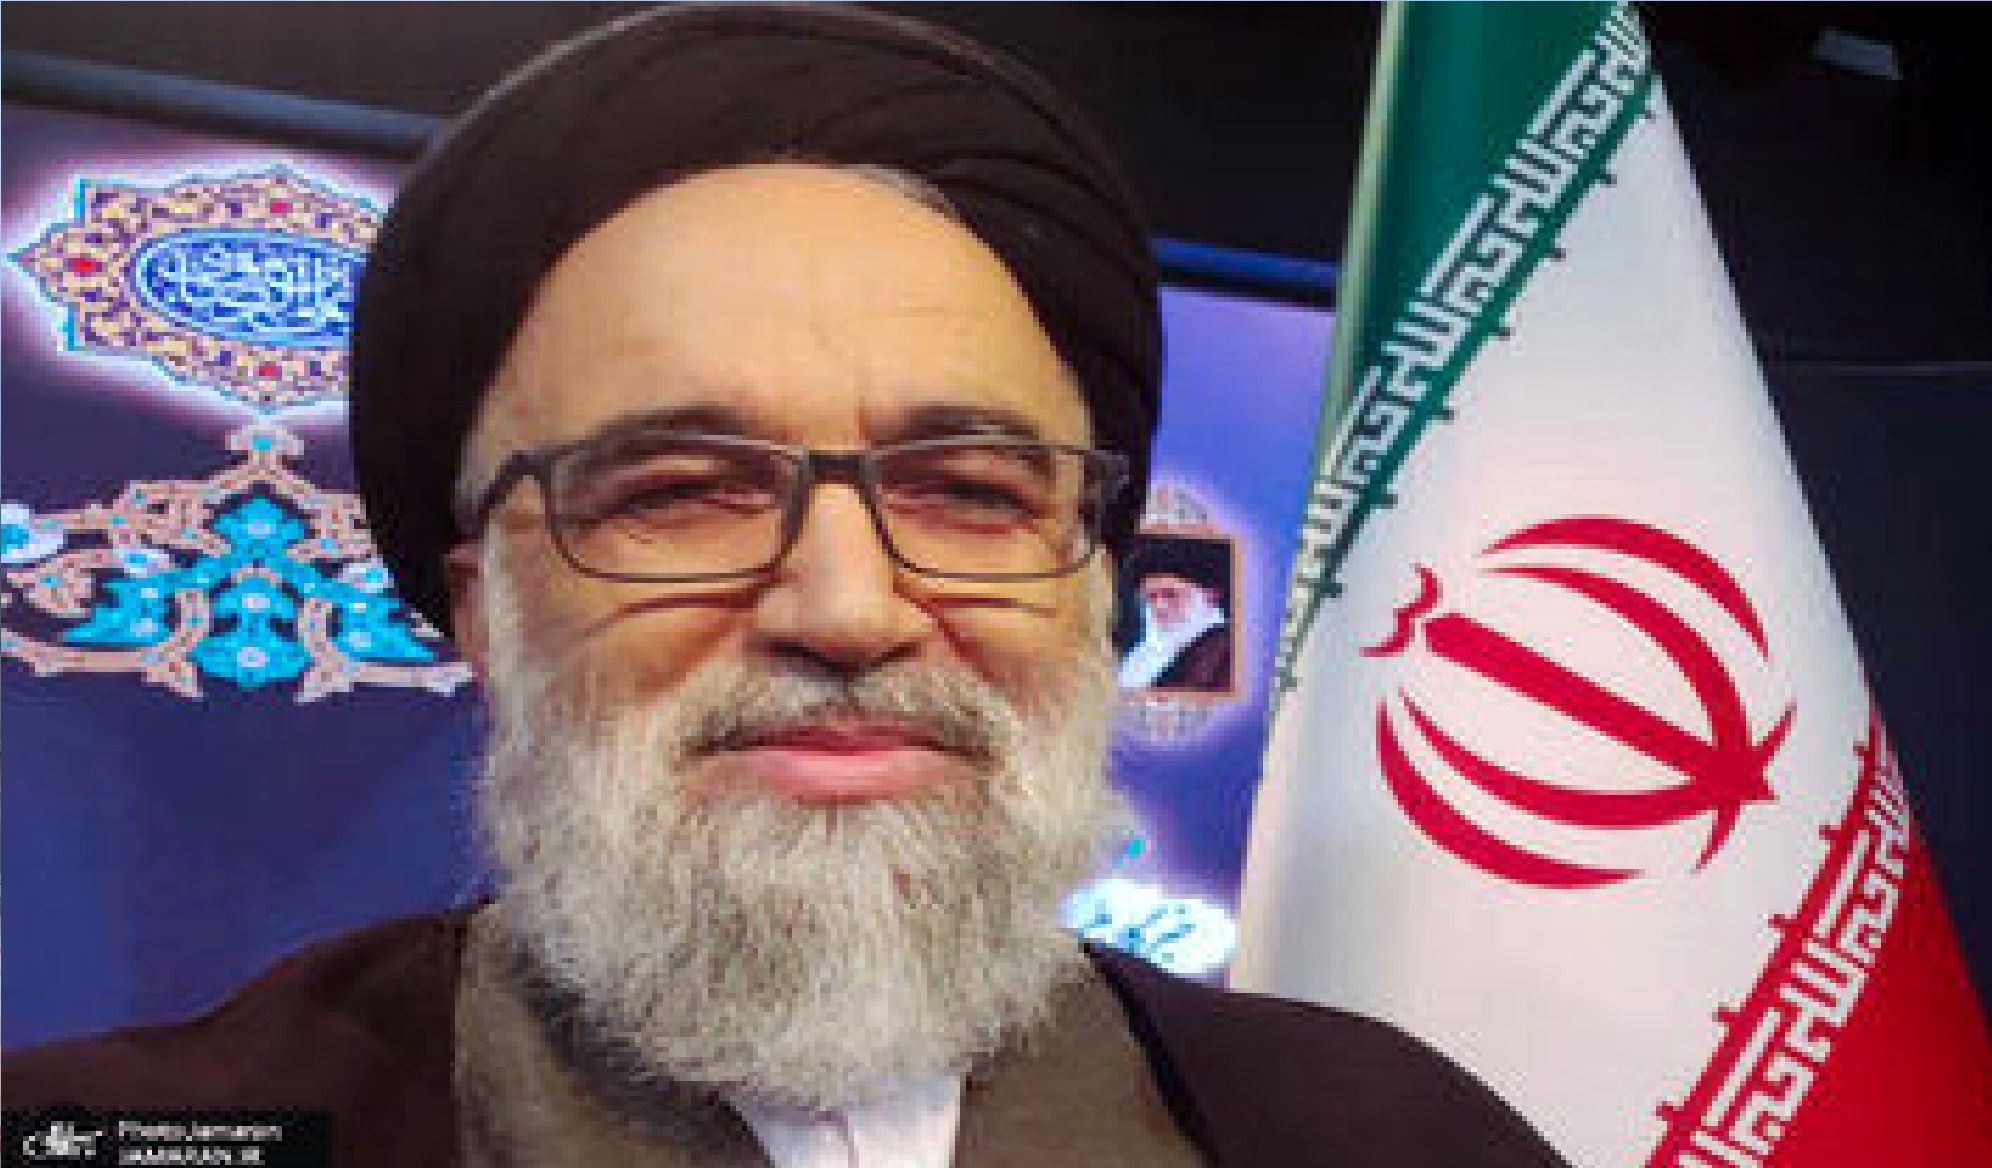 رقیب رئیسی در انتخابات مجلس خبرگان: معلوم است من رای نمی آورم!